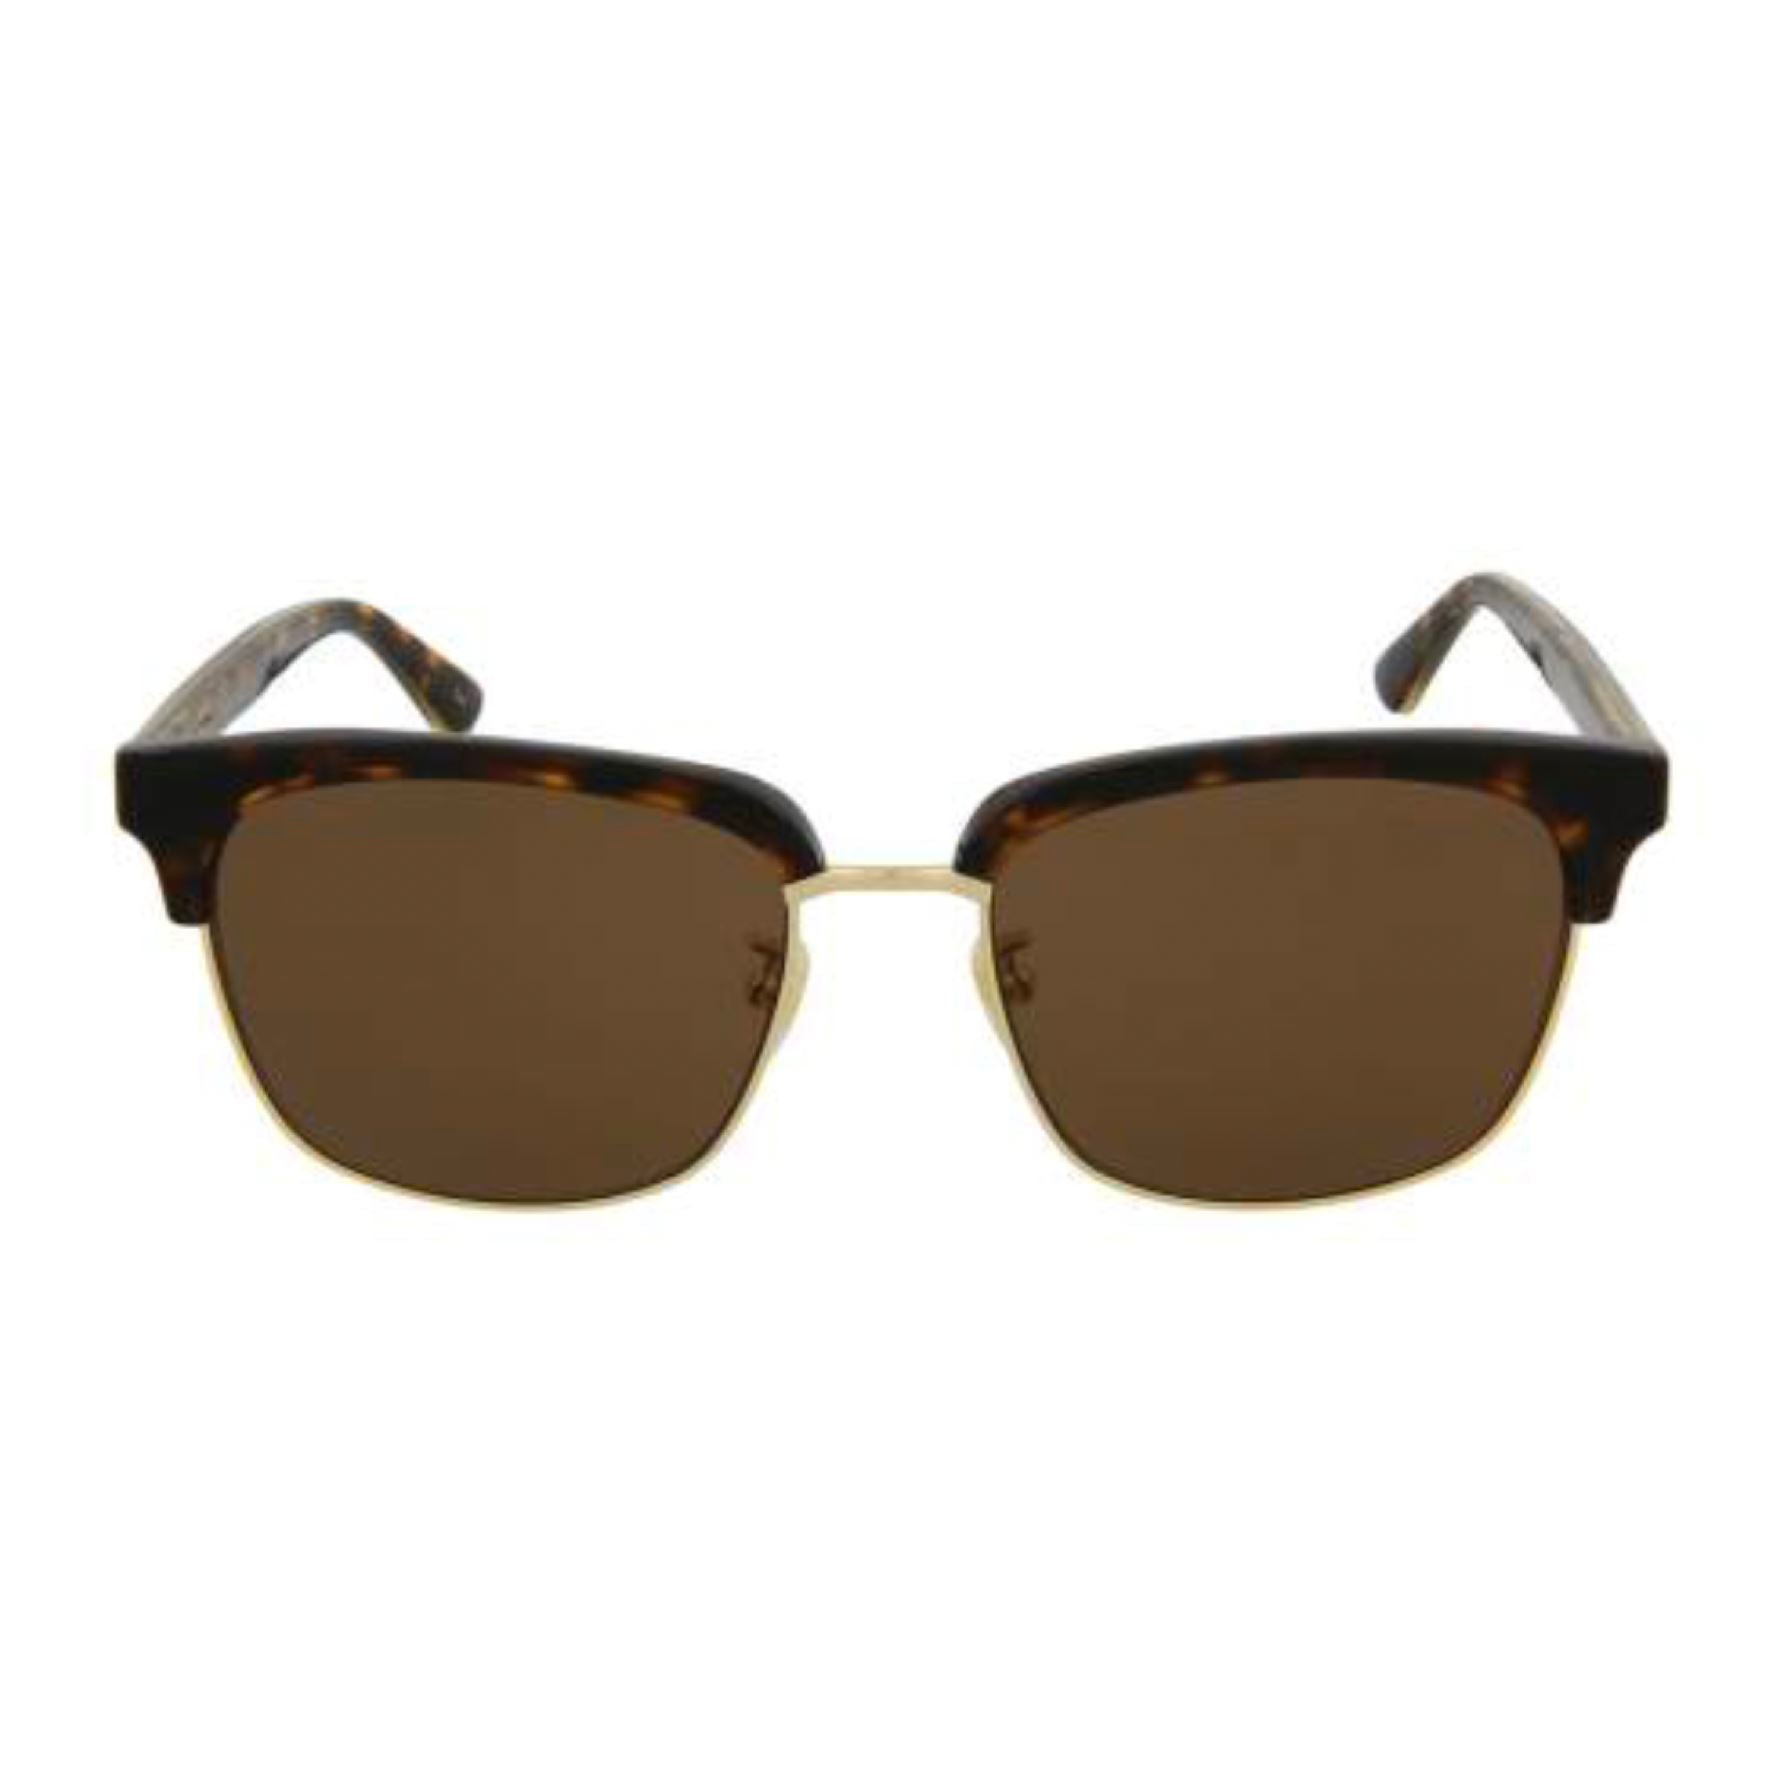 Gucci Havana Brown Sunglasses Sunglasses Gucci 